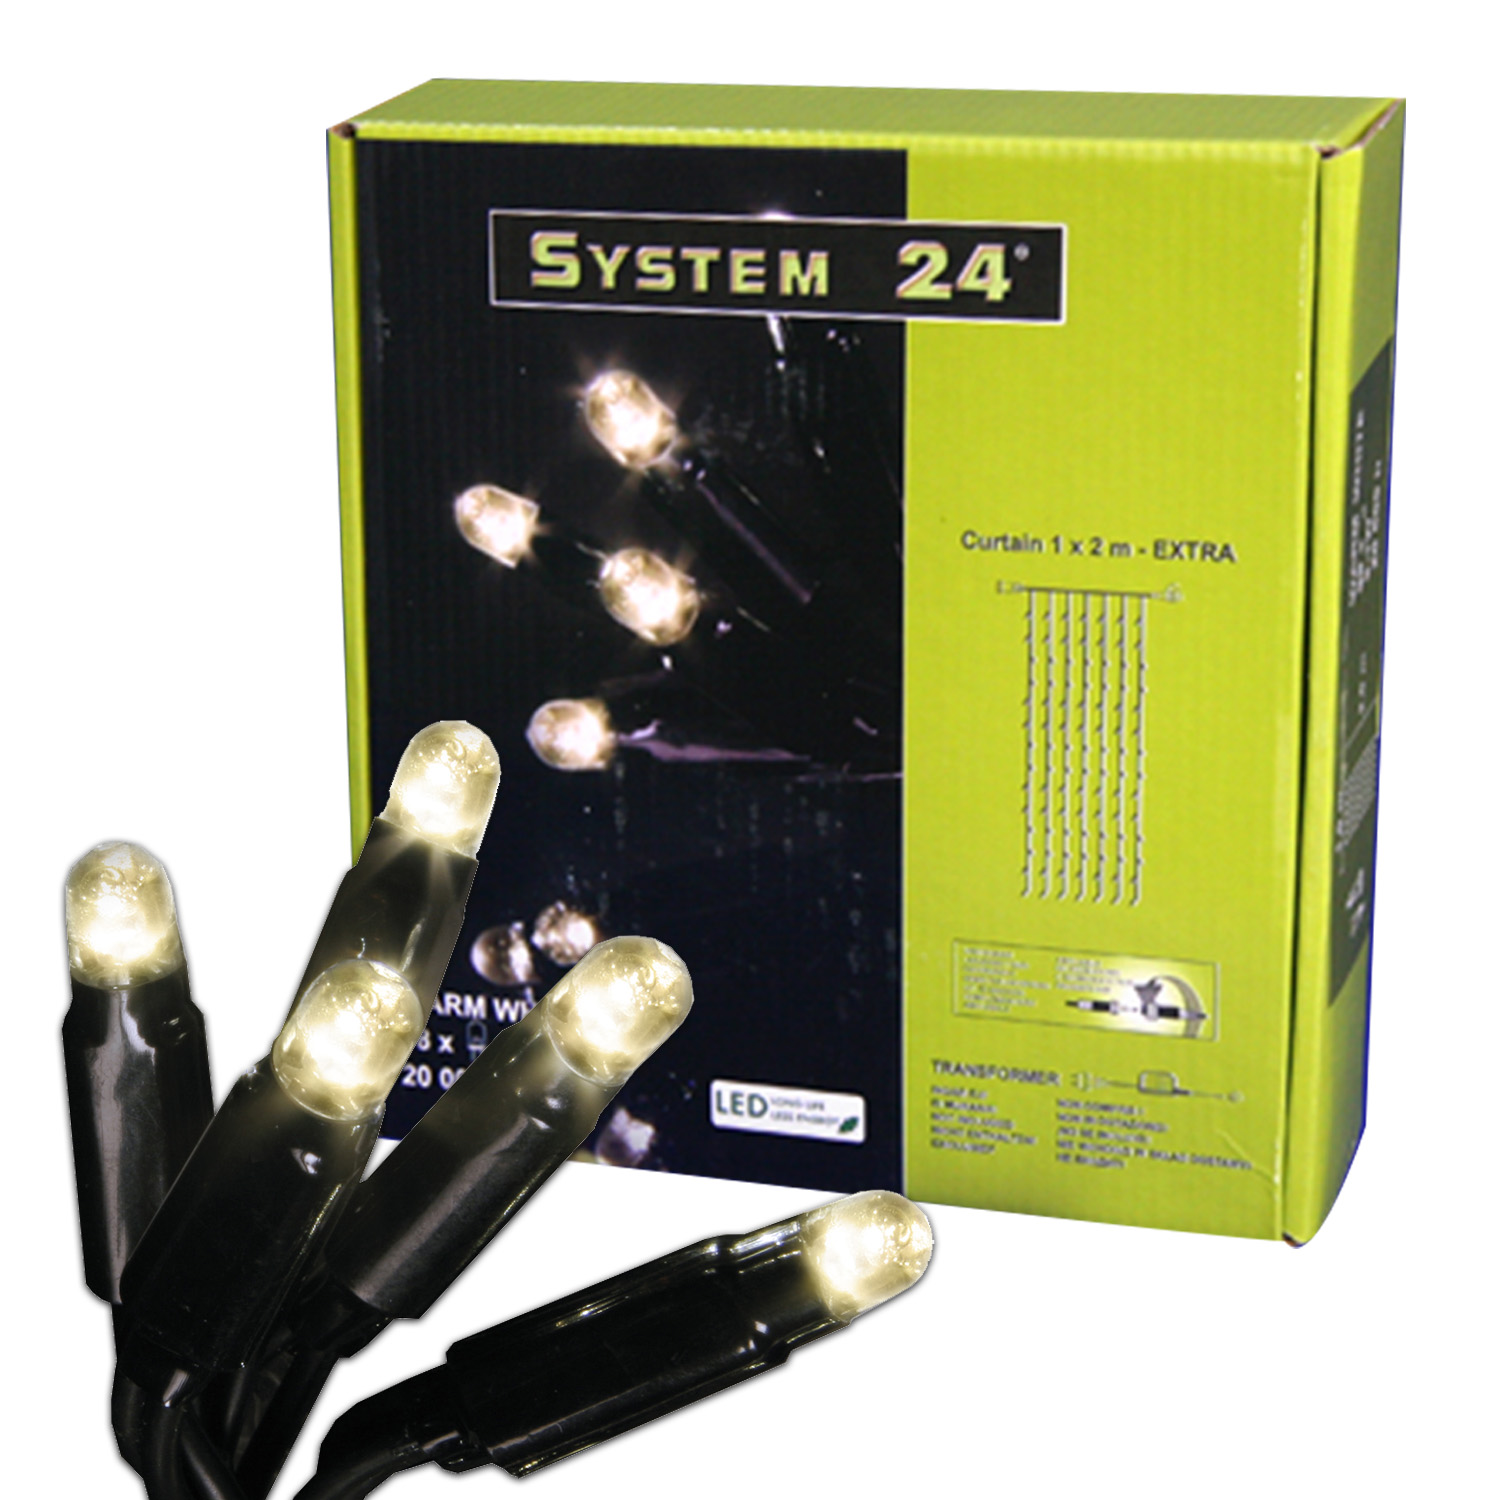 Гирлянда дождь  3х0,4м теплобелая кабель черный стартовая 49диодов LED System 24 outdoor